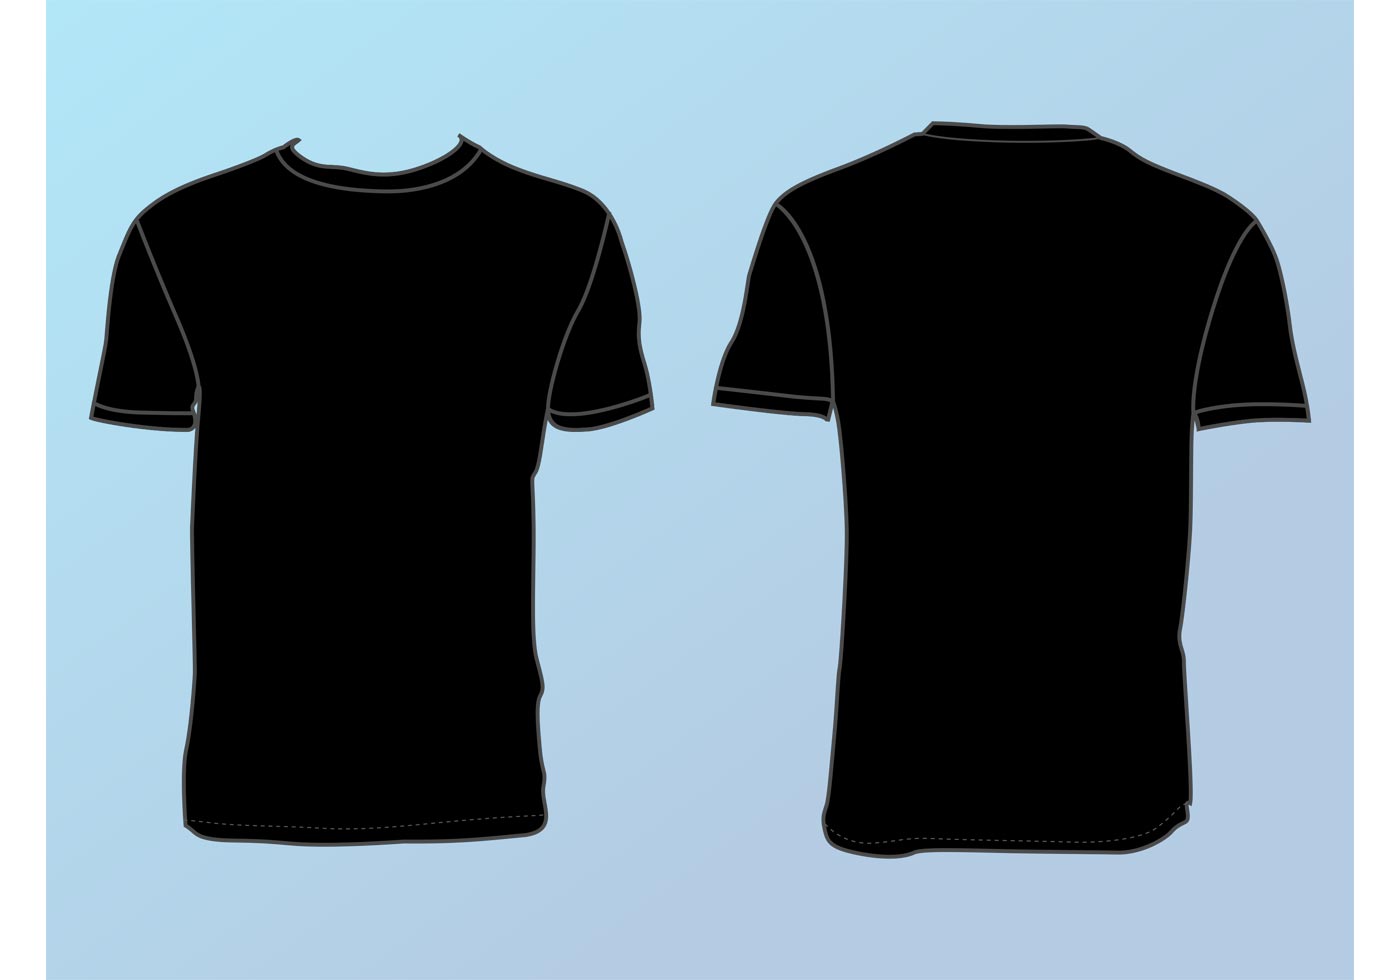 T Shirt Template Free Vector Art - (7038 Free Downloads)